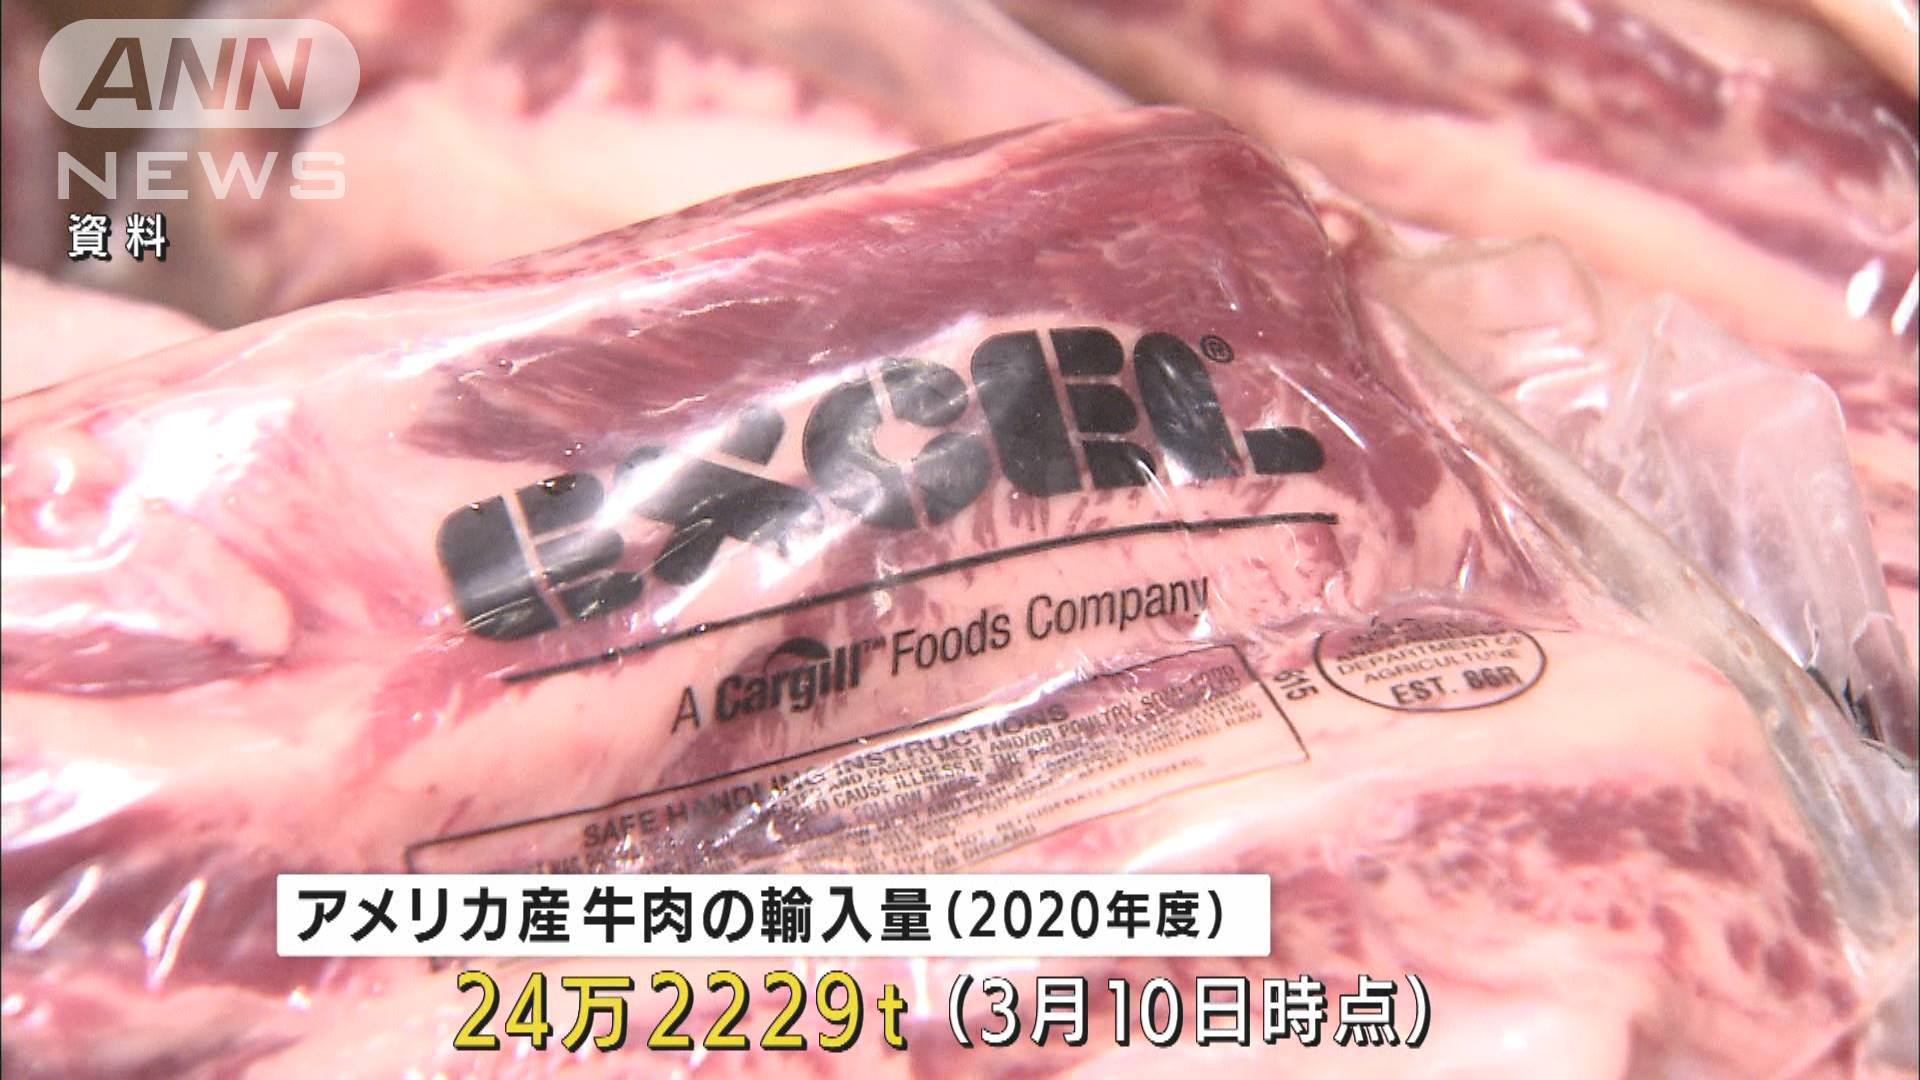 アメリカ産牛肉の輸入急増 セーフガード発令を発表 テレ朝news テレビ朝日のニュースサイト